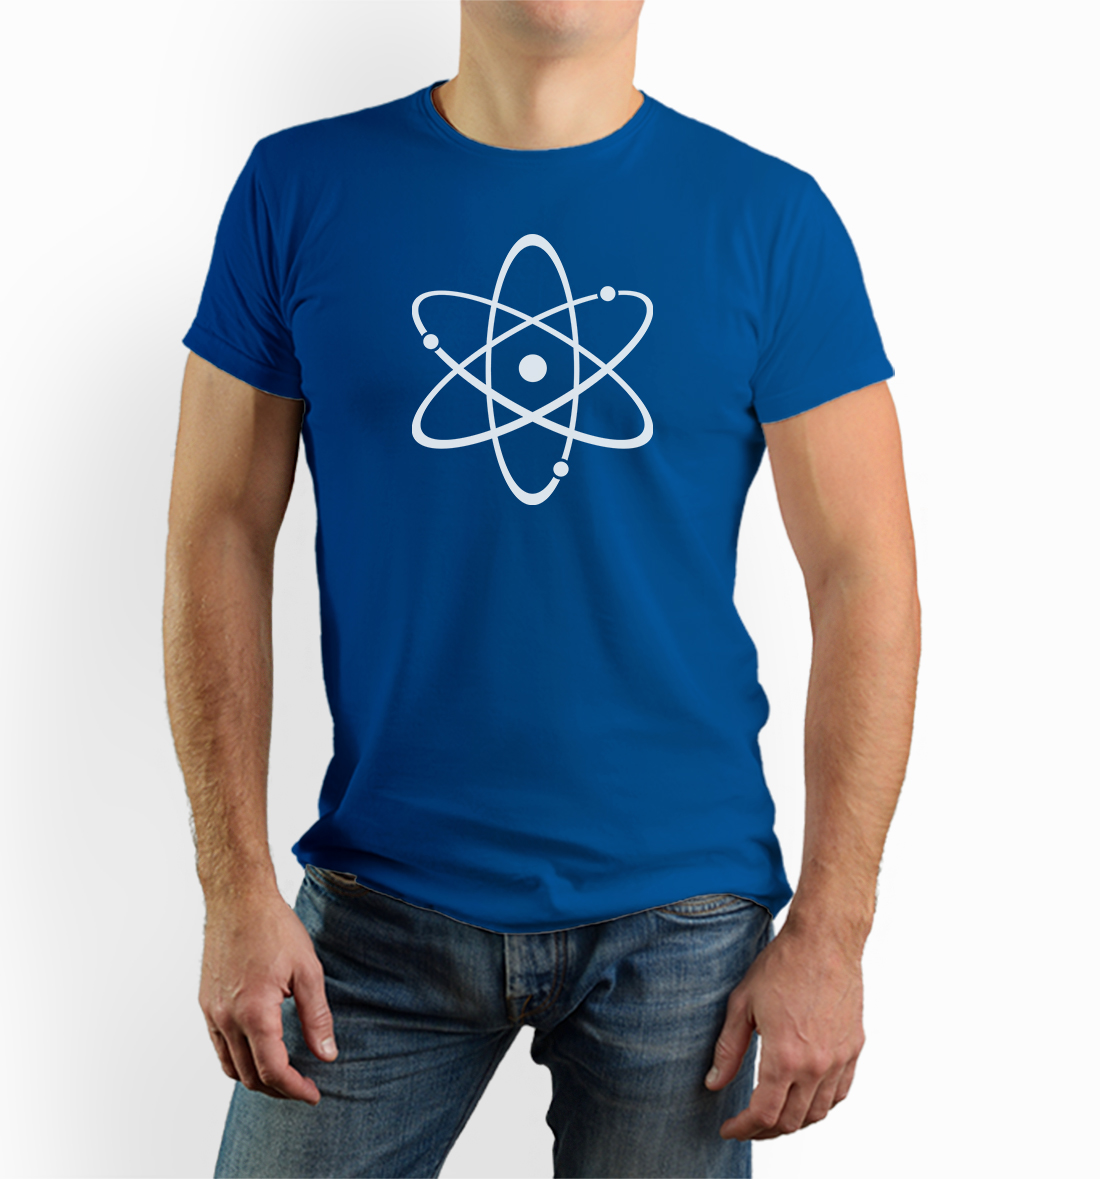 Atom scientific tshirt